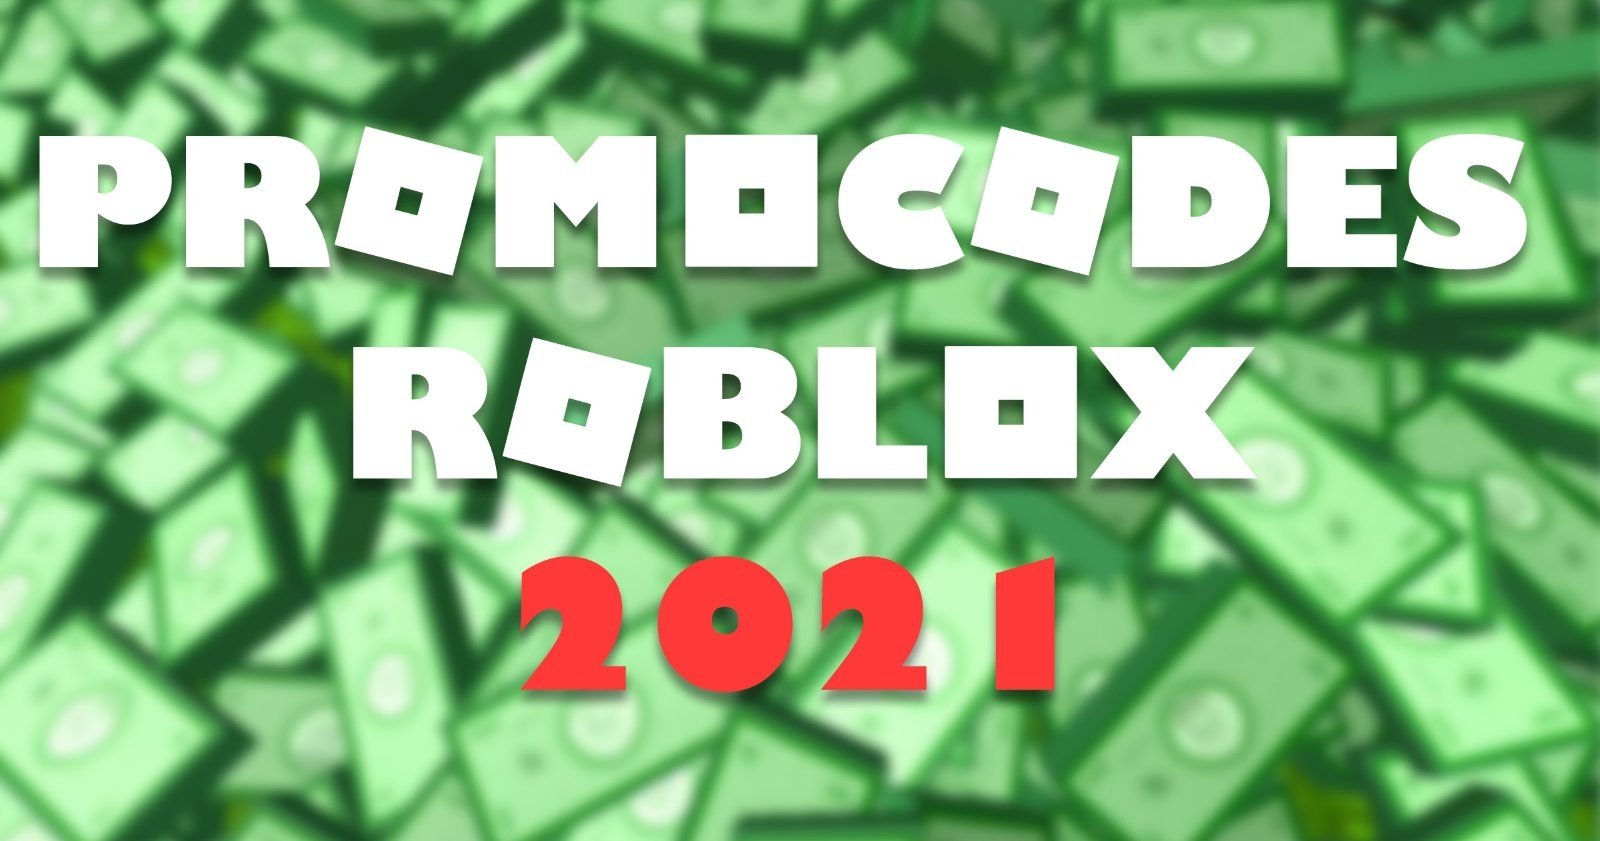 Promocodes De Roblox En Julio 2021 Lista De Codigos Completa - como poner un codigo de robux en roblox